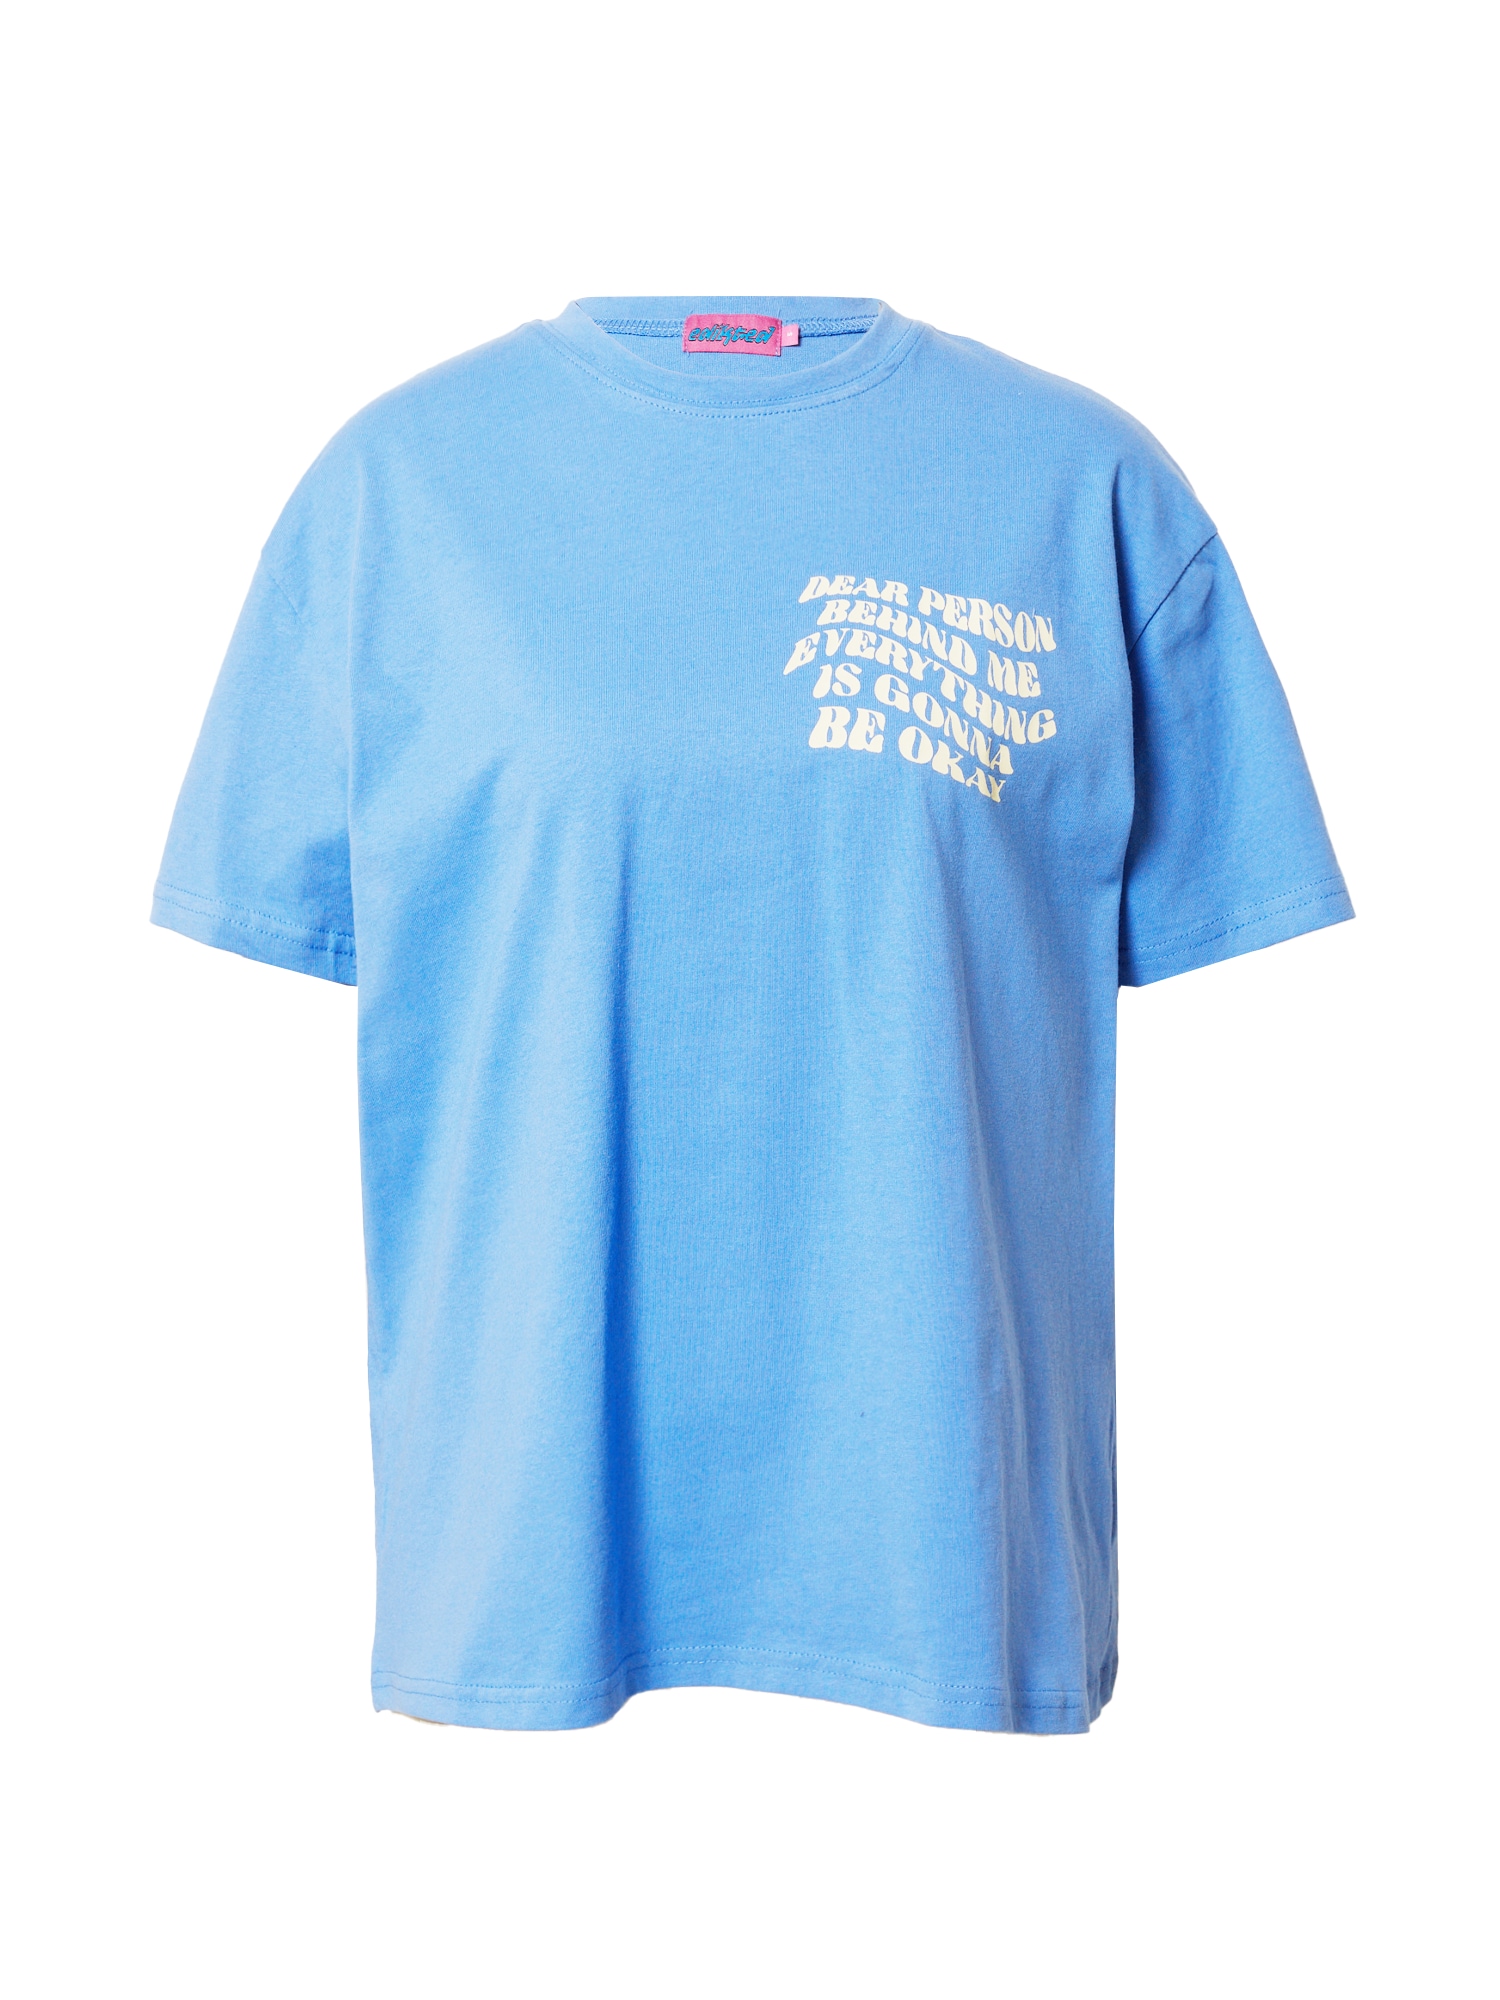 Edikted Marškinėliai 'Dear Person' šviesiai mėlyna / balkšva